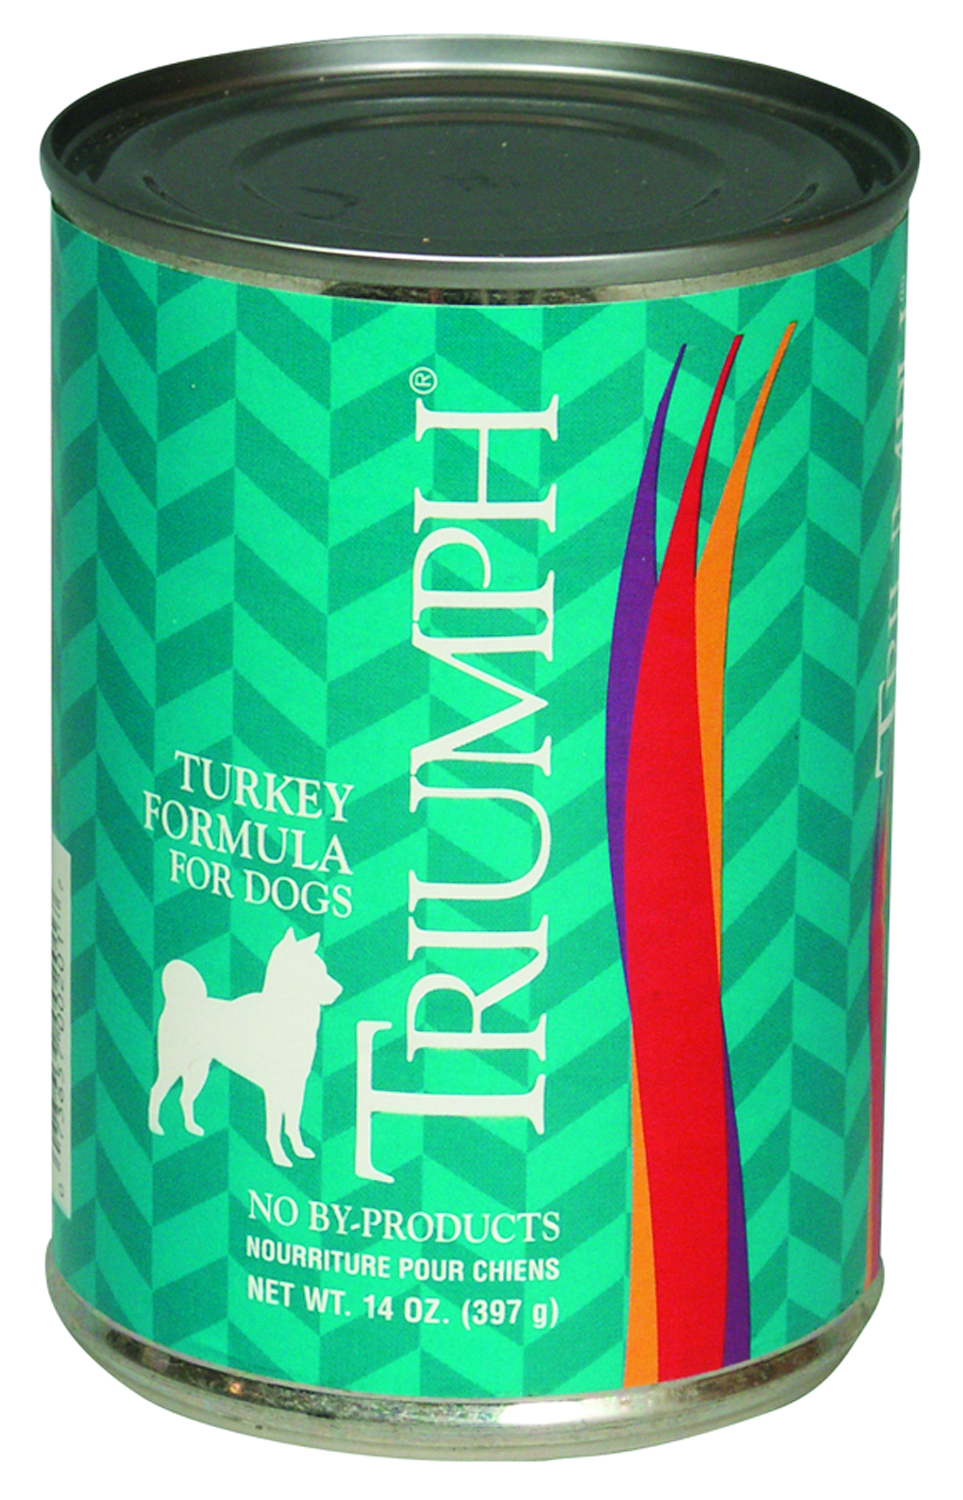 14 Oz Triumph Canned Dog Food - Turkey